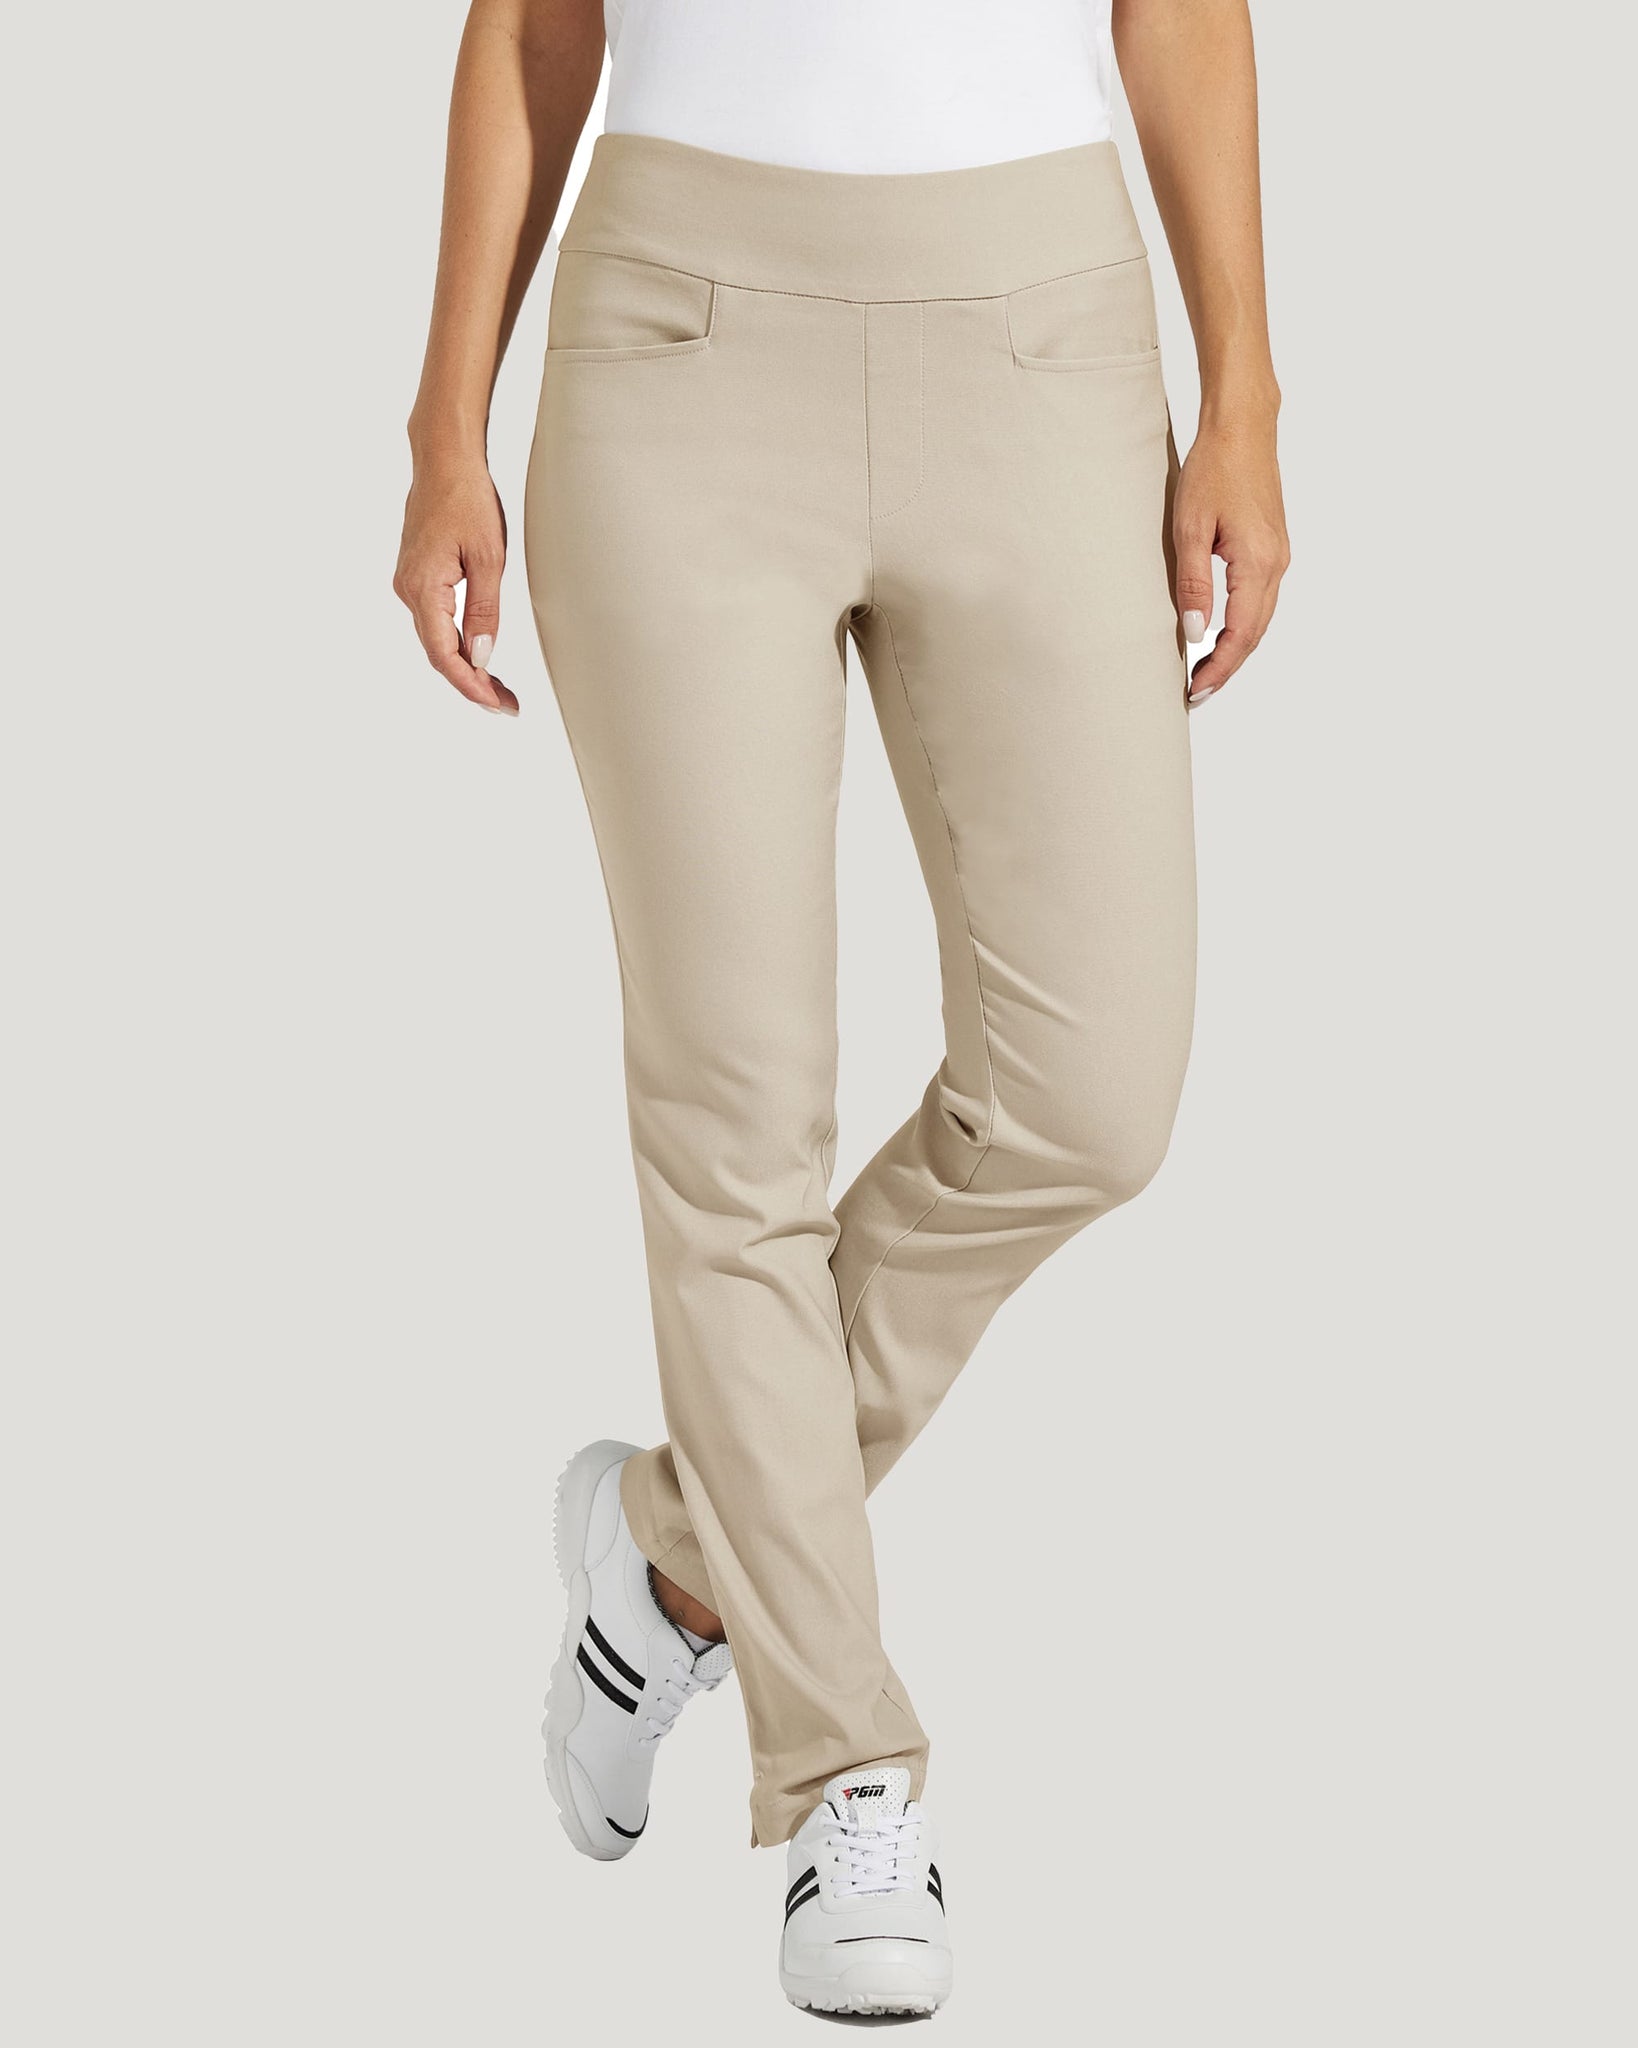 Women's Golf Pull-On Pants_Khaki_model1